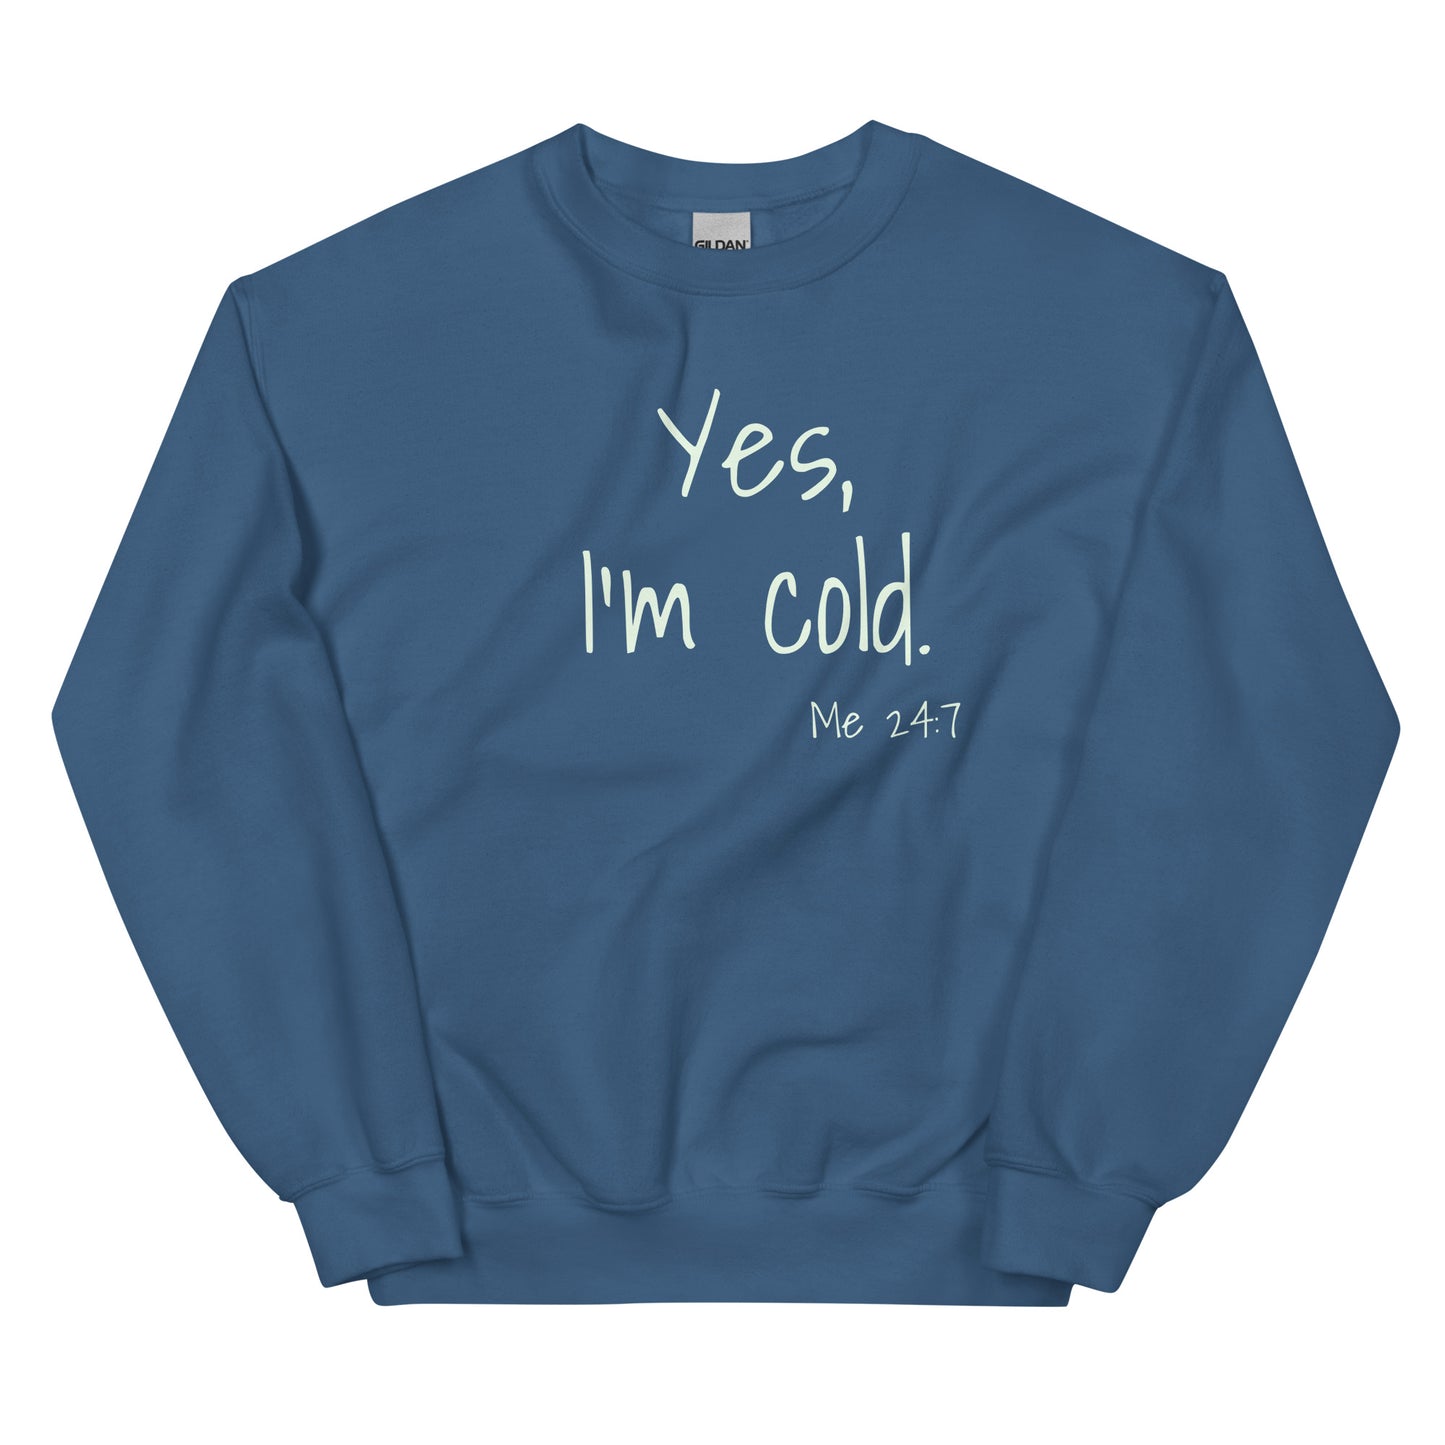 Yes, I'm Cold. - Unisex Sweatshirt